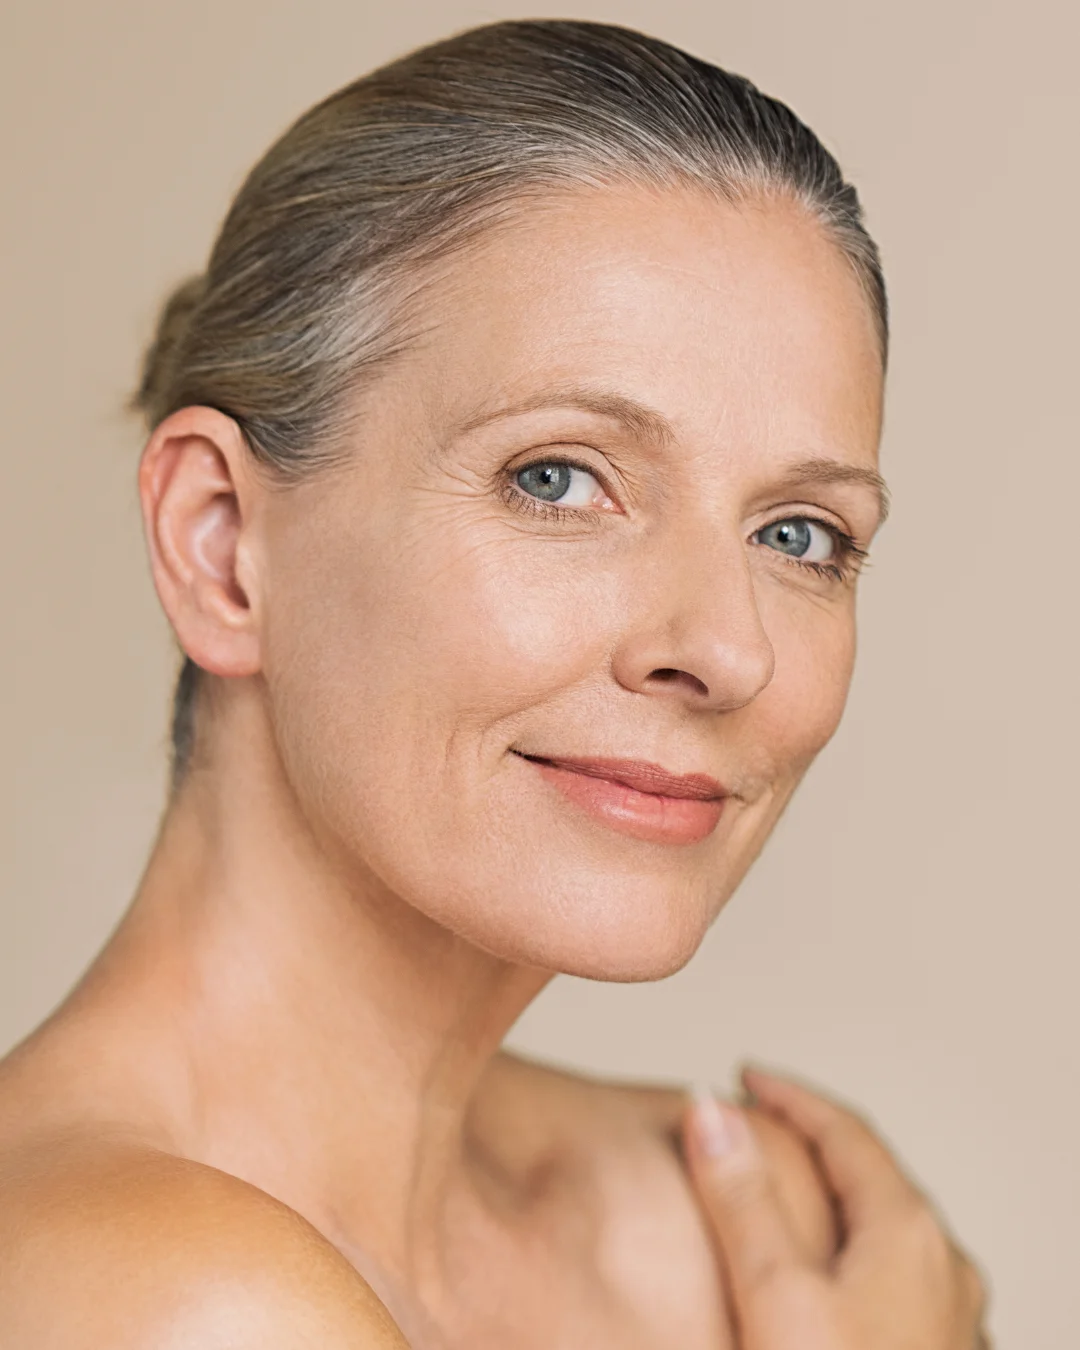 Non-Toxic Anti-Aging Alternatives To Botox